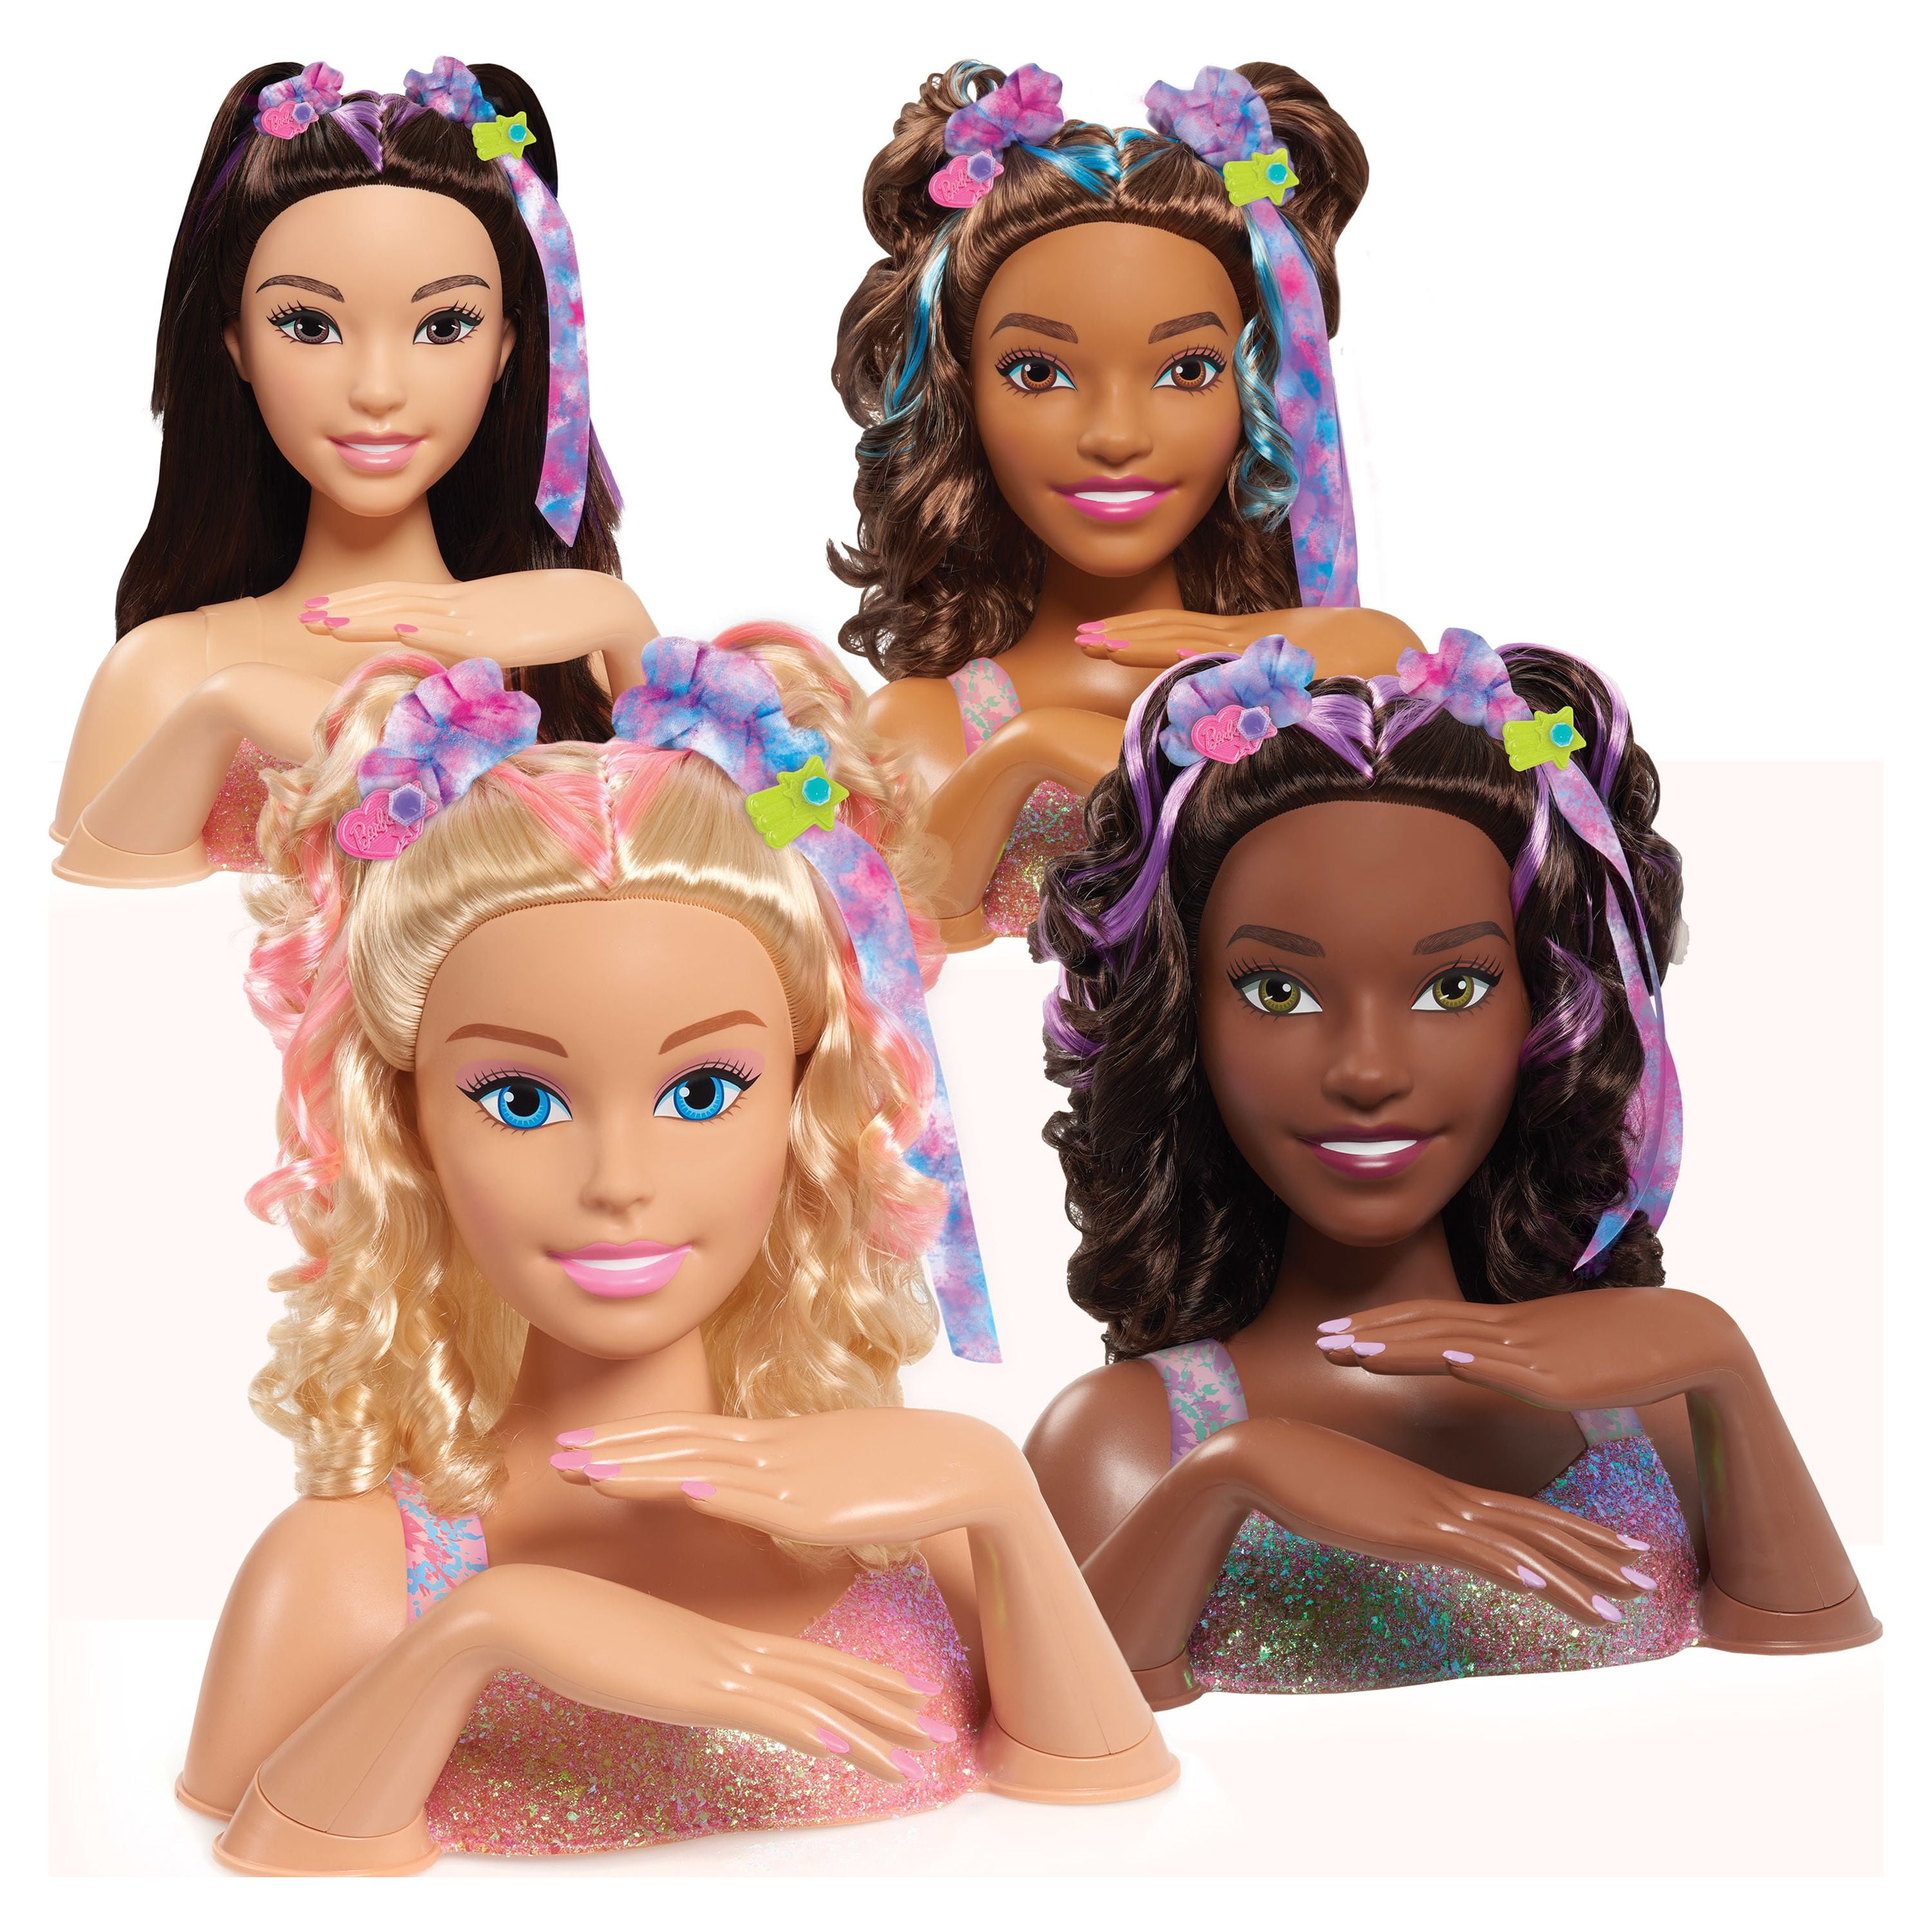 Barbie Sisters Dolls Set - 2 Black Barbie Doll Bundle with African American Tie Dye Barbie Doll, Barbie Rock Star Doll, Accessories, More | Black